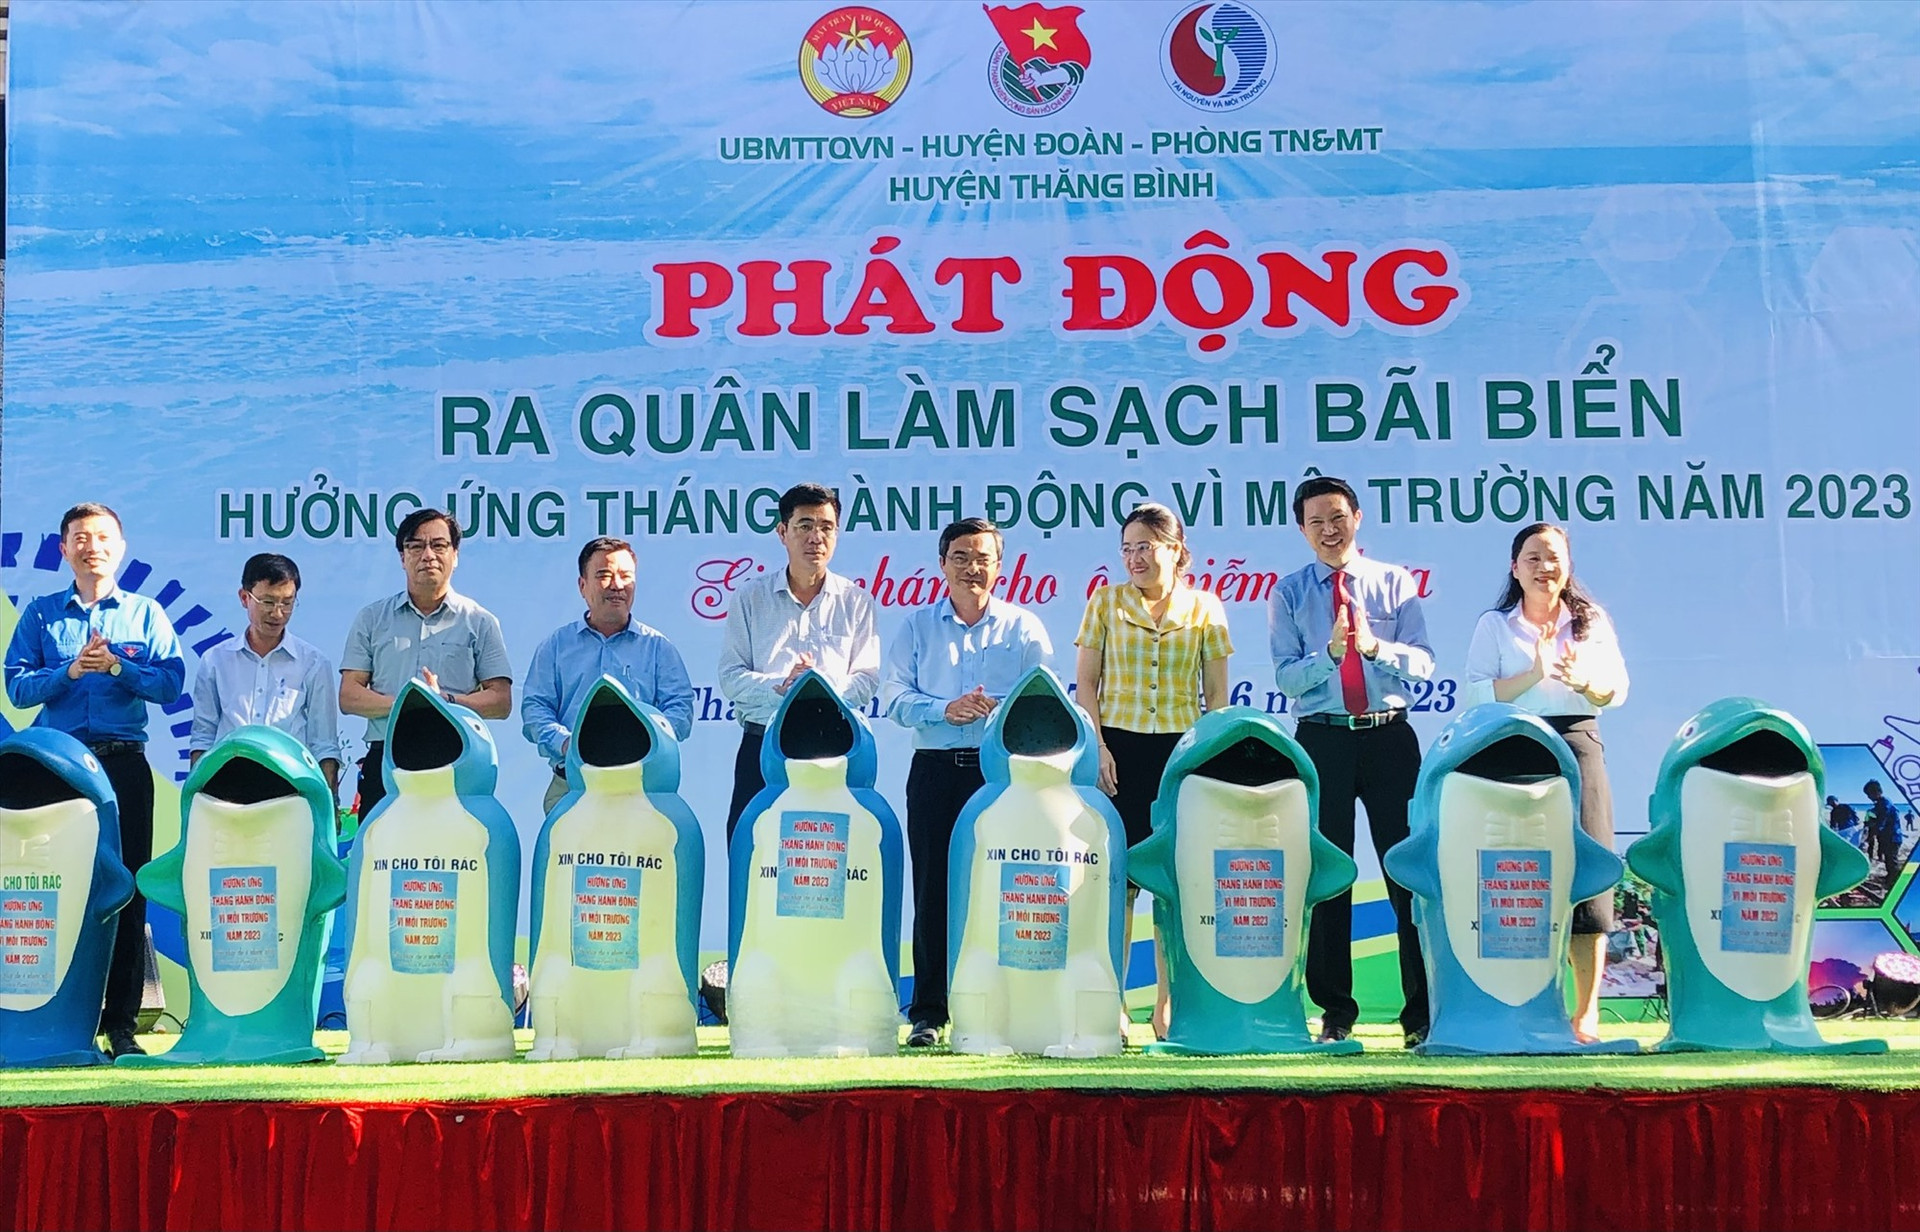 Ban tổ chức tặng 10 thùng đựng rác thải cho xã Bình Minh để đặt dọc theo bờ biển tại địa phương.